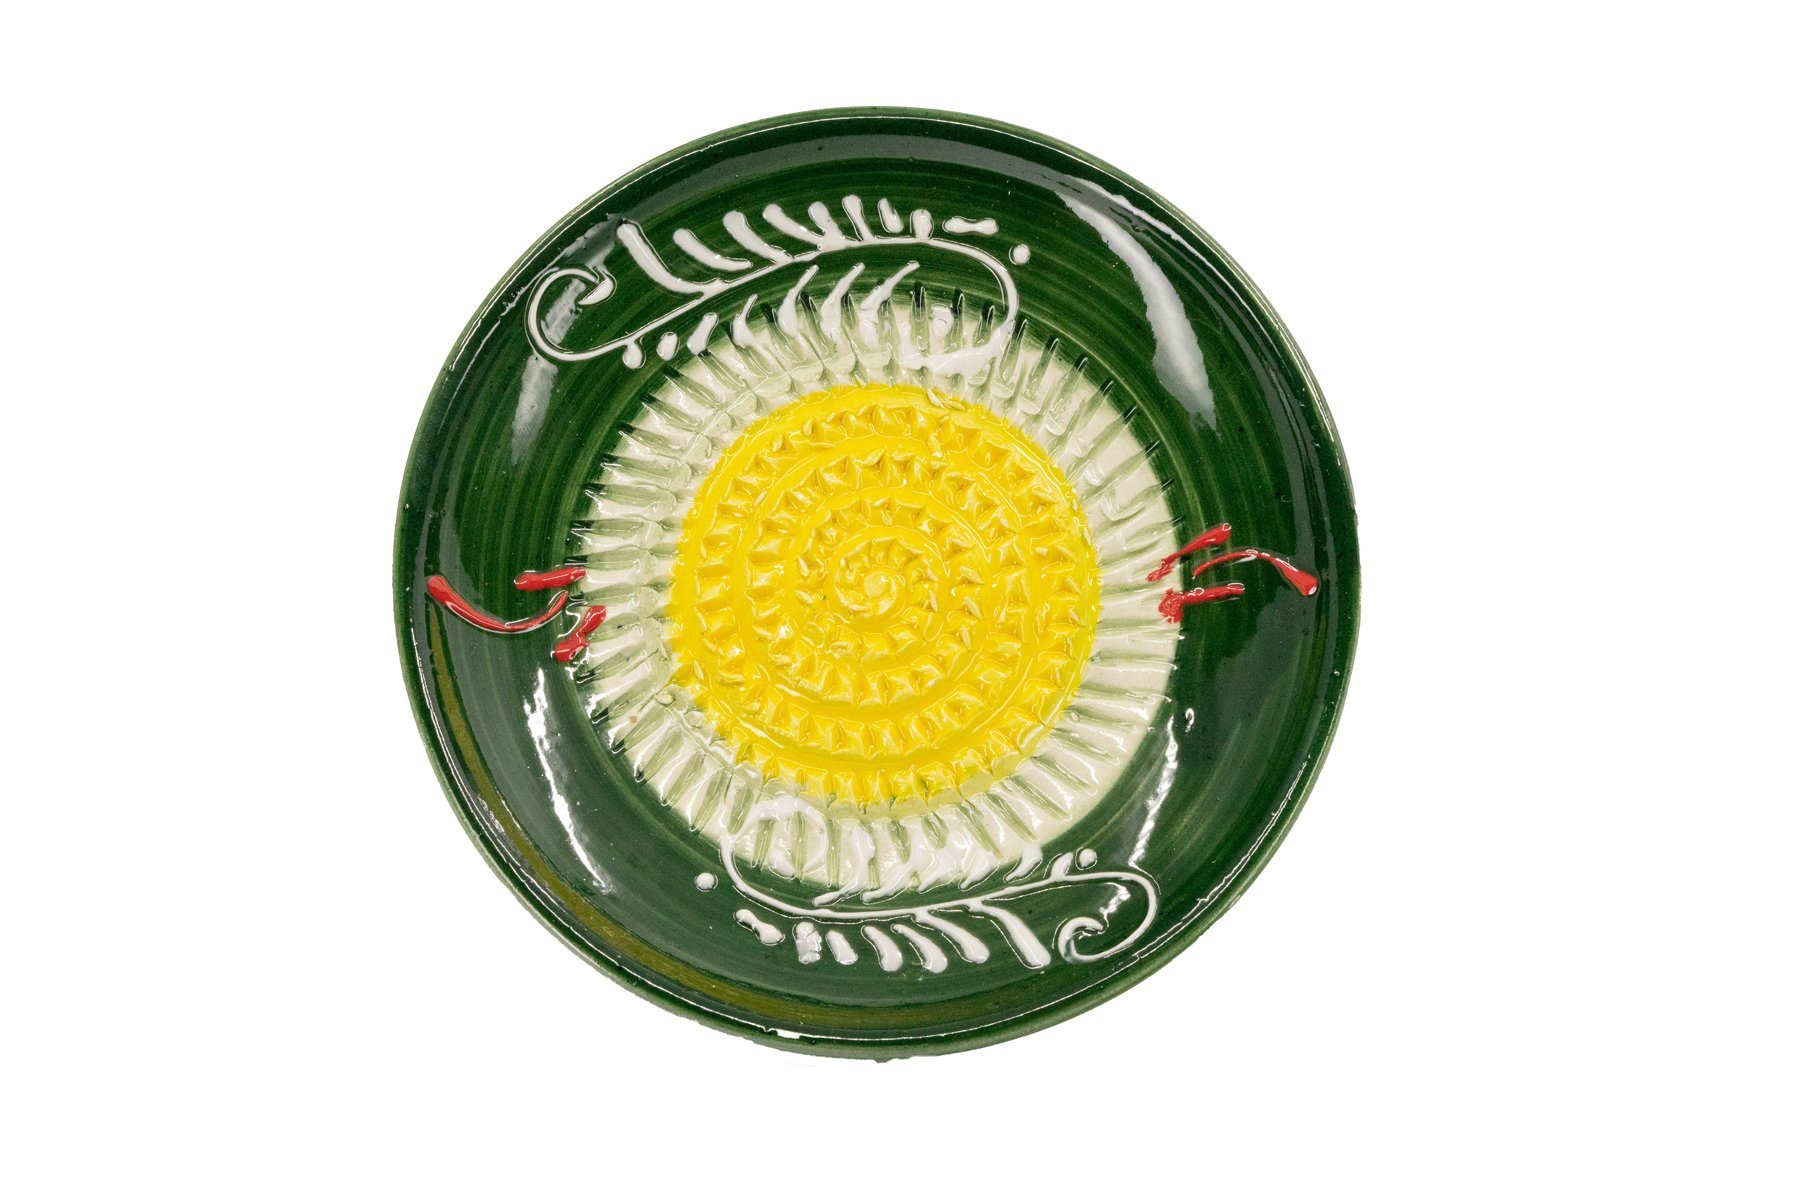 Kaladia Multireibe 12cm Reibeteller in grün & gelb, Keramik, handbemalte Küchenreibe - Made in Spain | Zitronenreiben